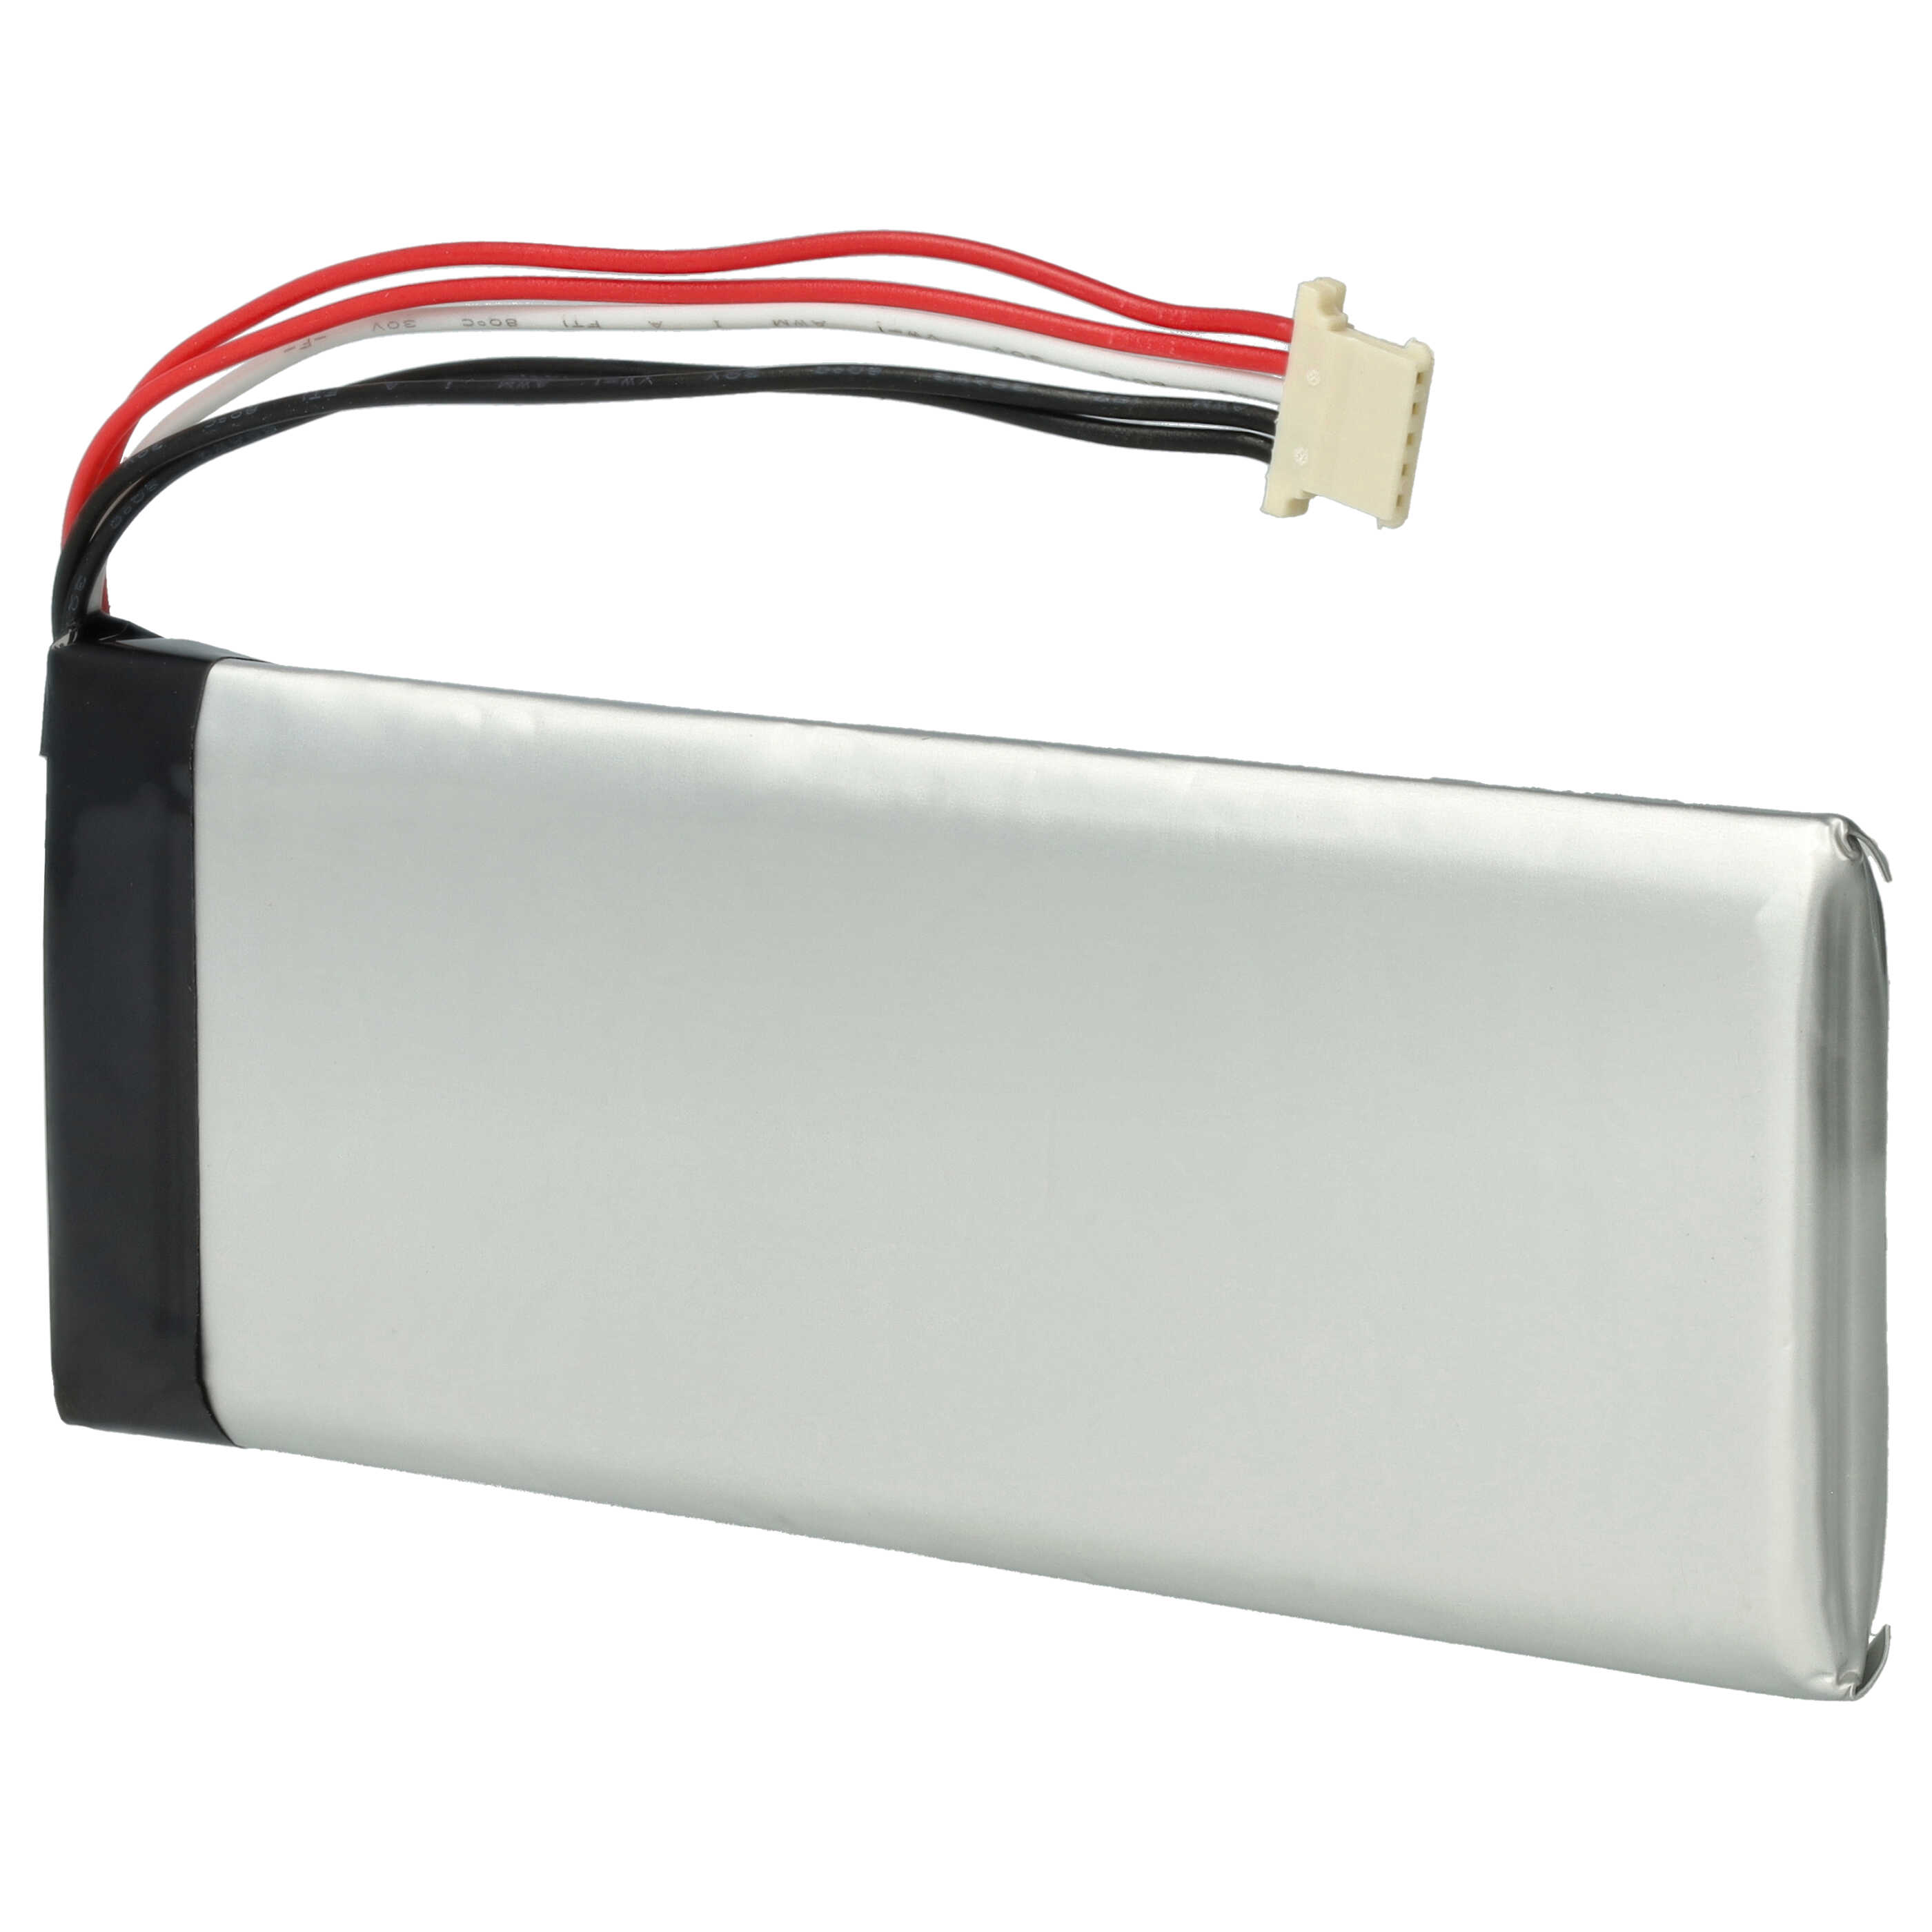 Batterie remplace Autel MLP604193 pour outil de diagnostique - 2800mAh 3,7V Li-polymère